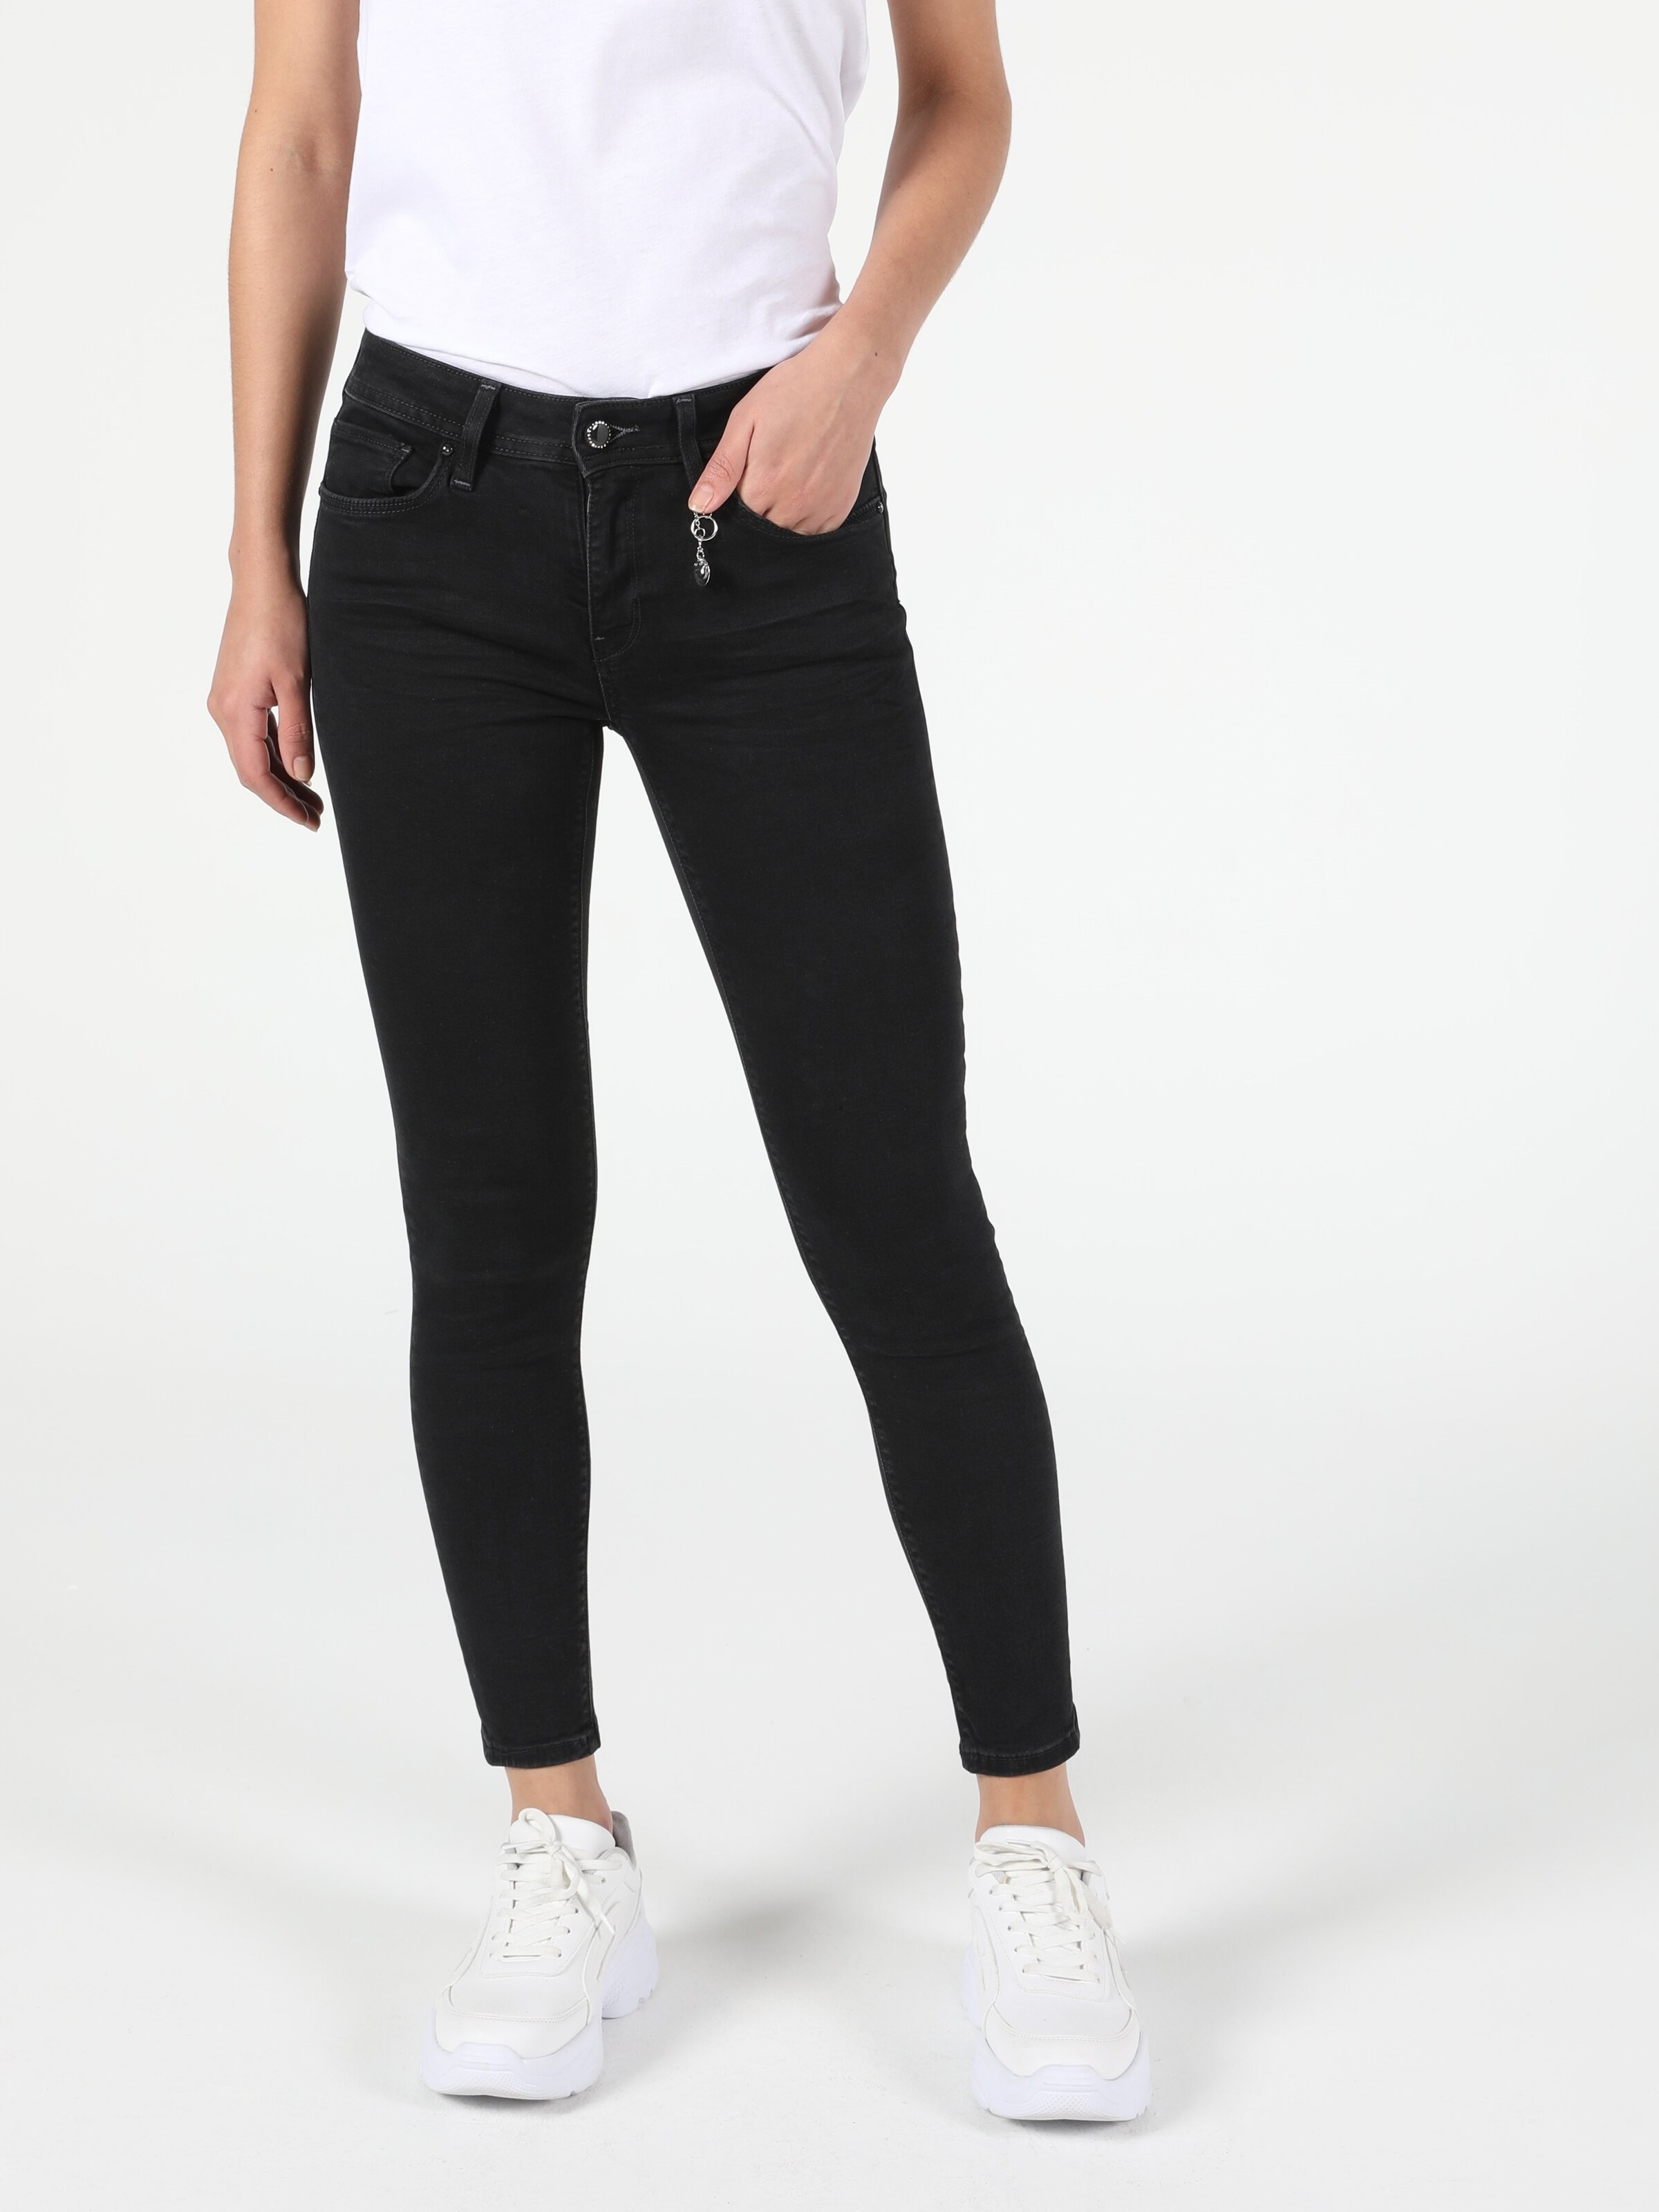 Afișați detalii pentru Pantaloni De Dama Negru Super Slim Fit 759 LARA 